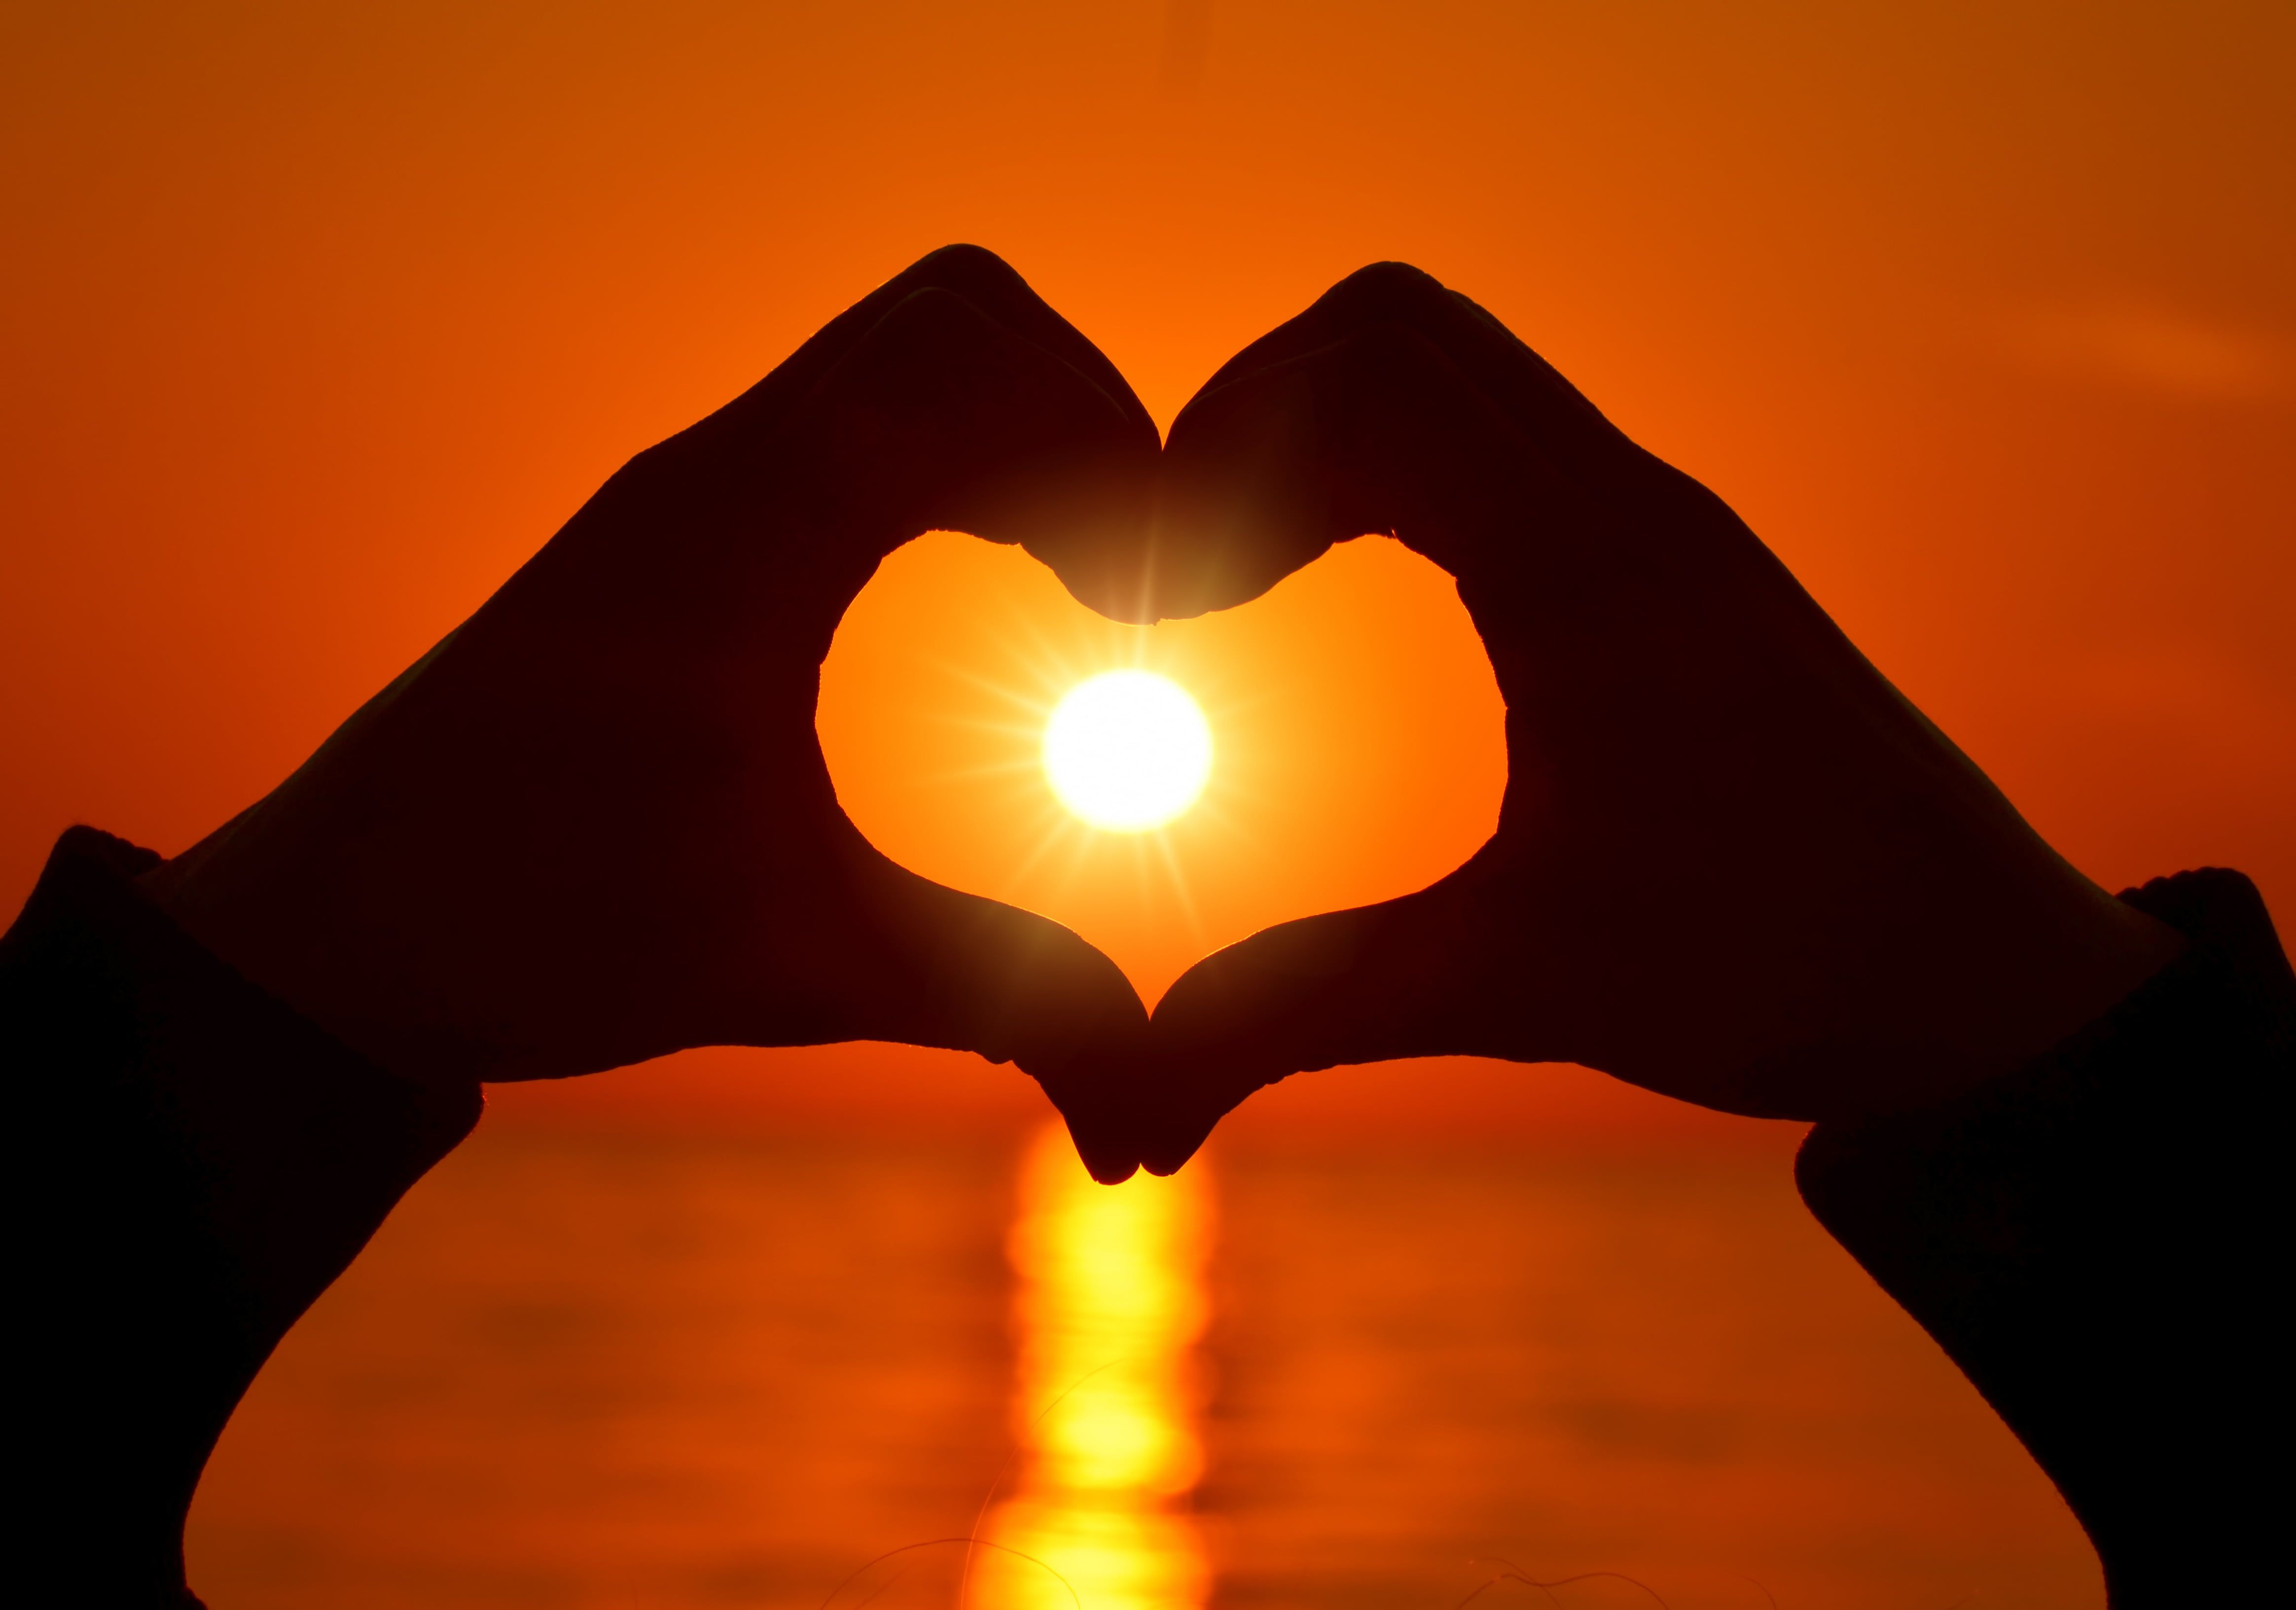 hand heart form #love #heart #love #heart #sunset #romantic #hands K # wallpaper #hdwallpaper #desktop. Sunset photography, HD wallpaper, Love heart symbol